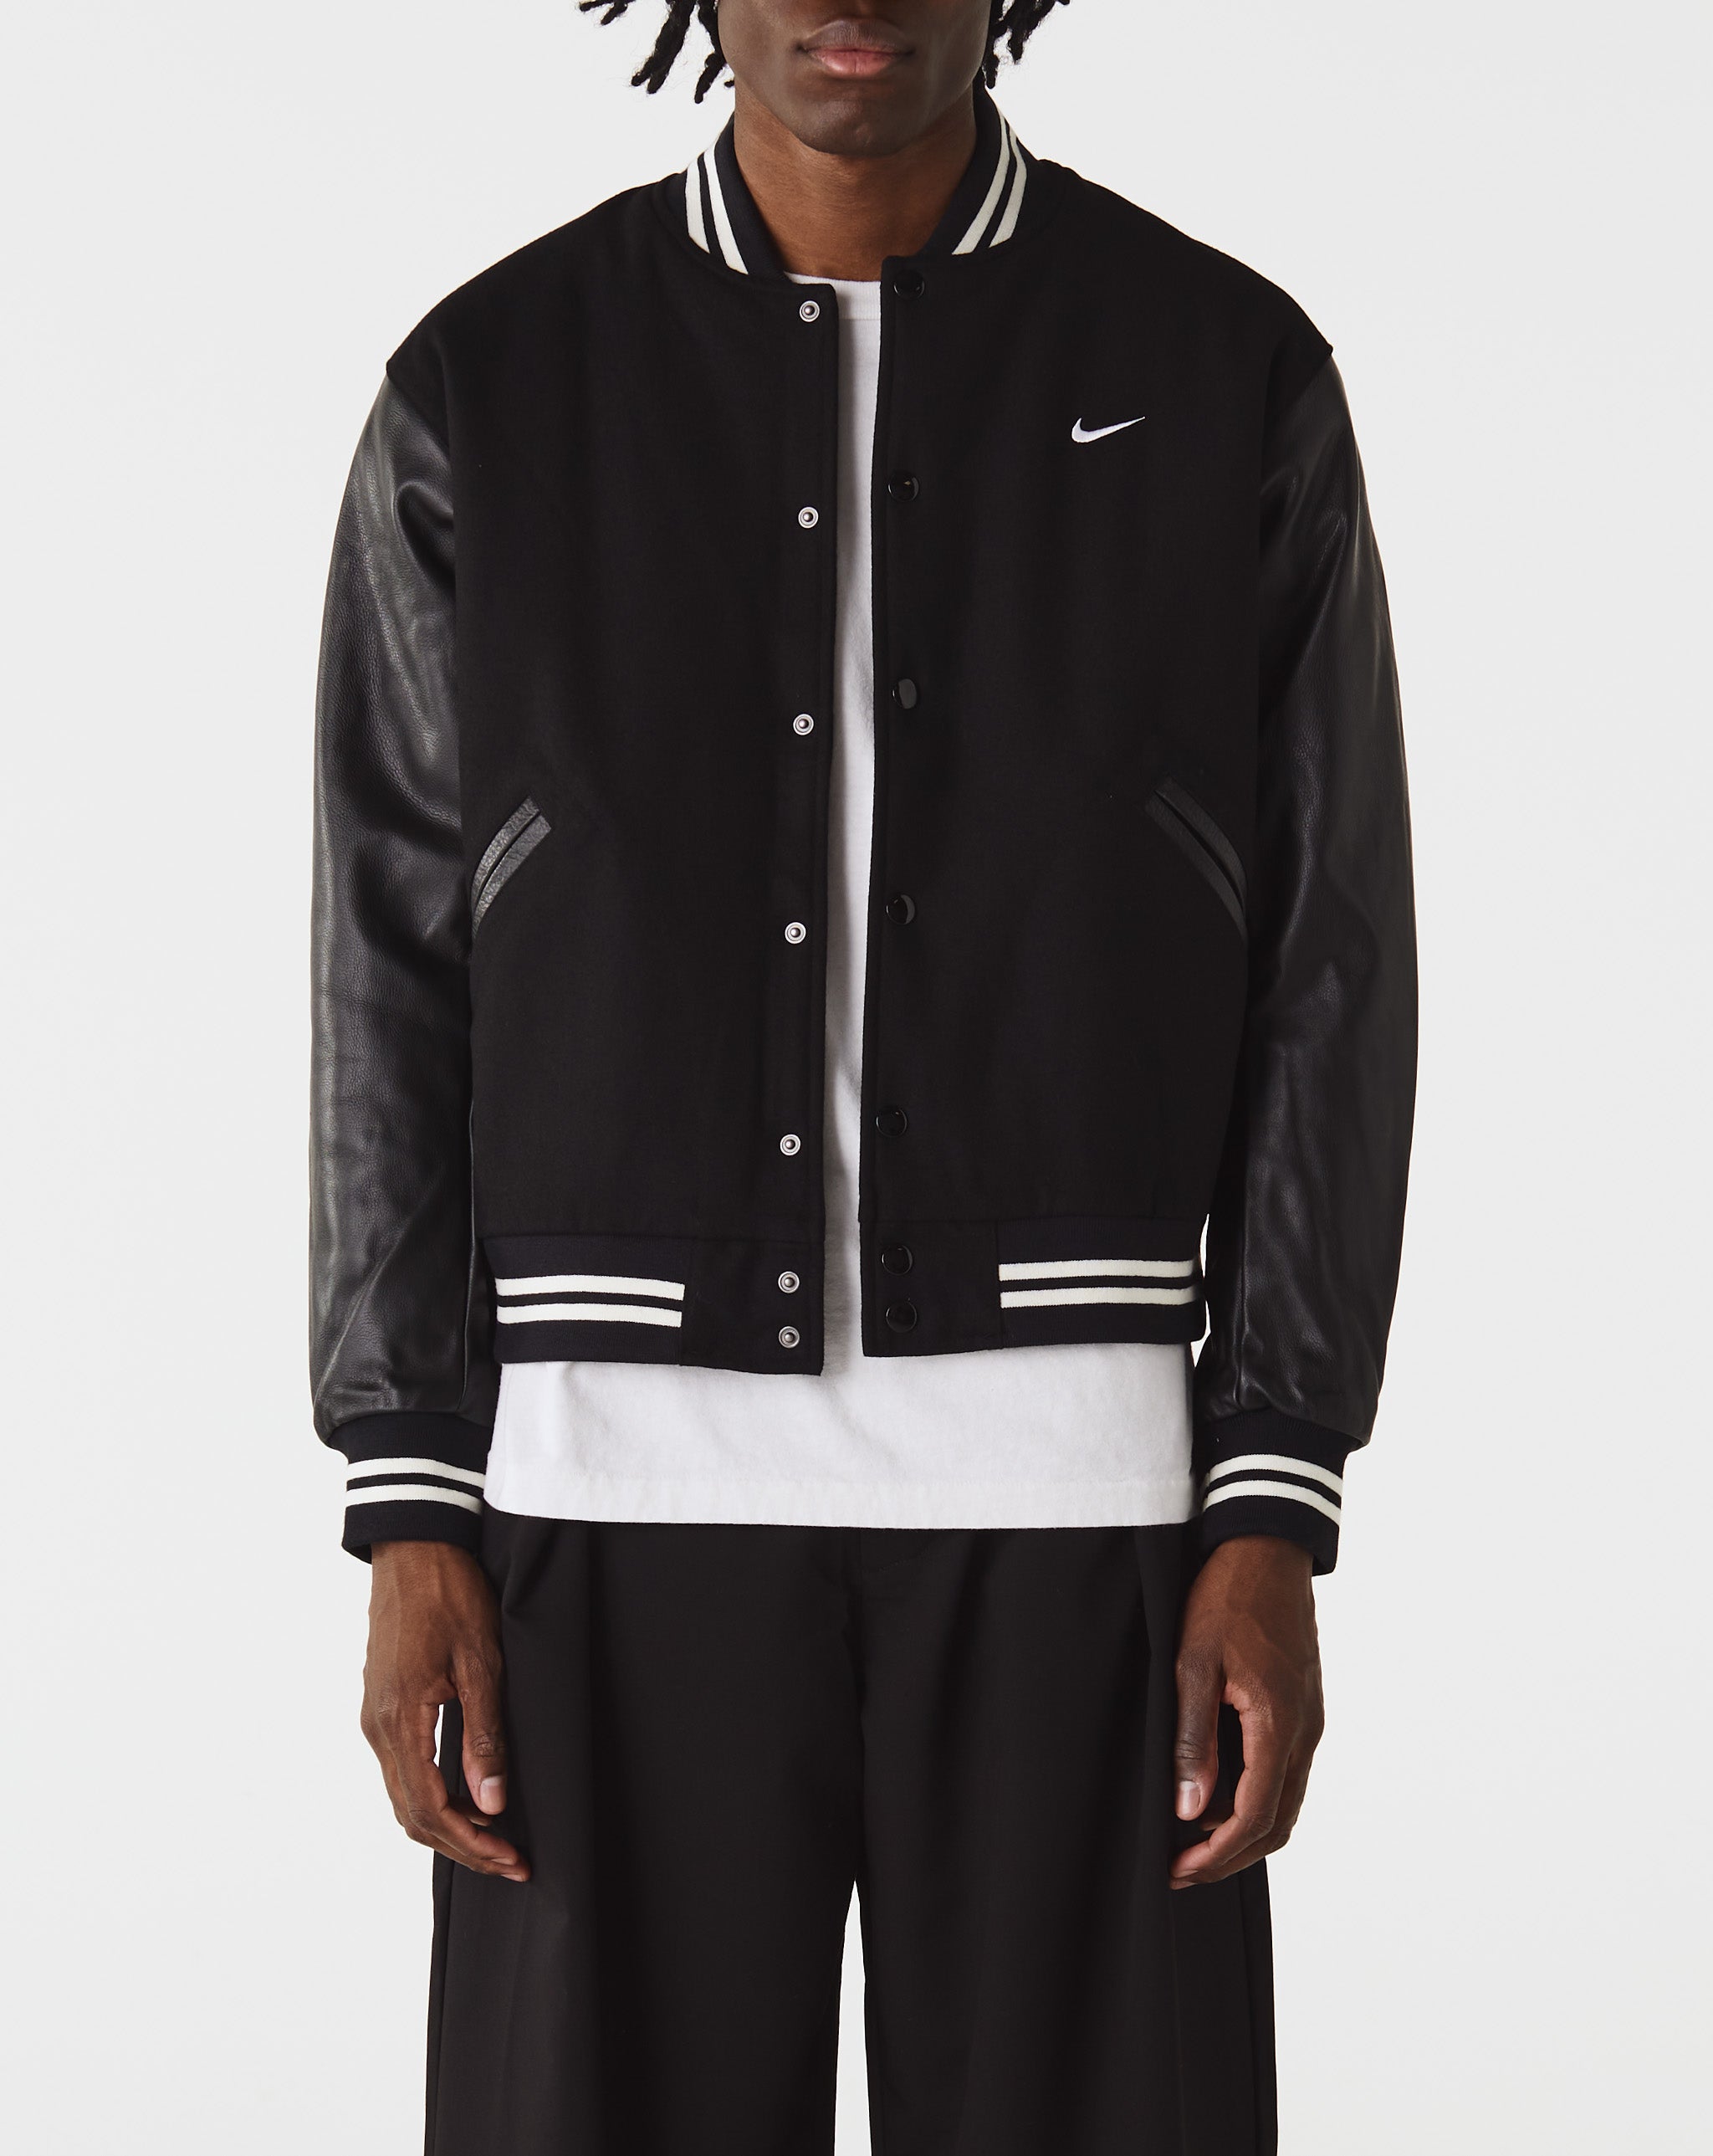 Nike Nike Authentics Varsity Jacket  - Cheap 127-0 Jordan outlet